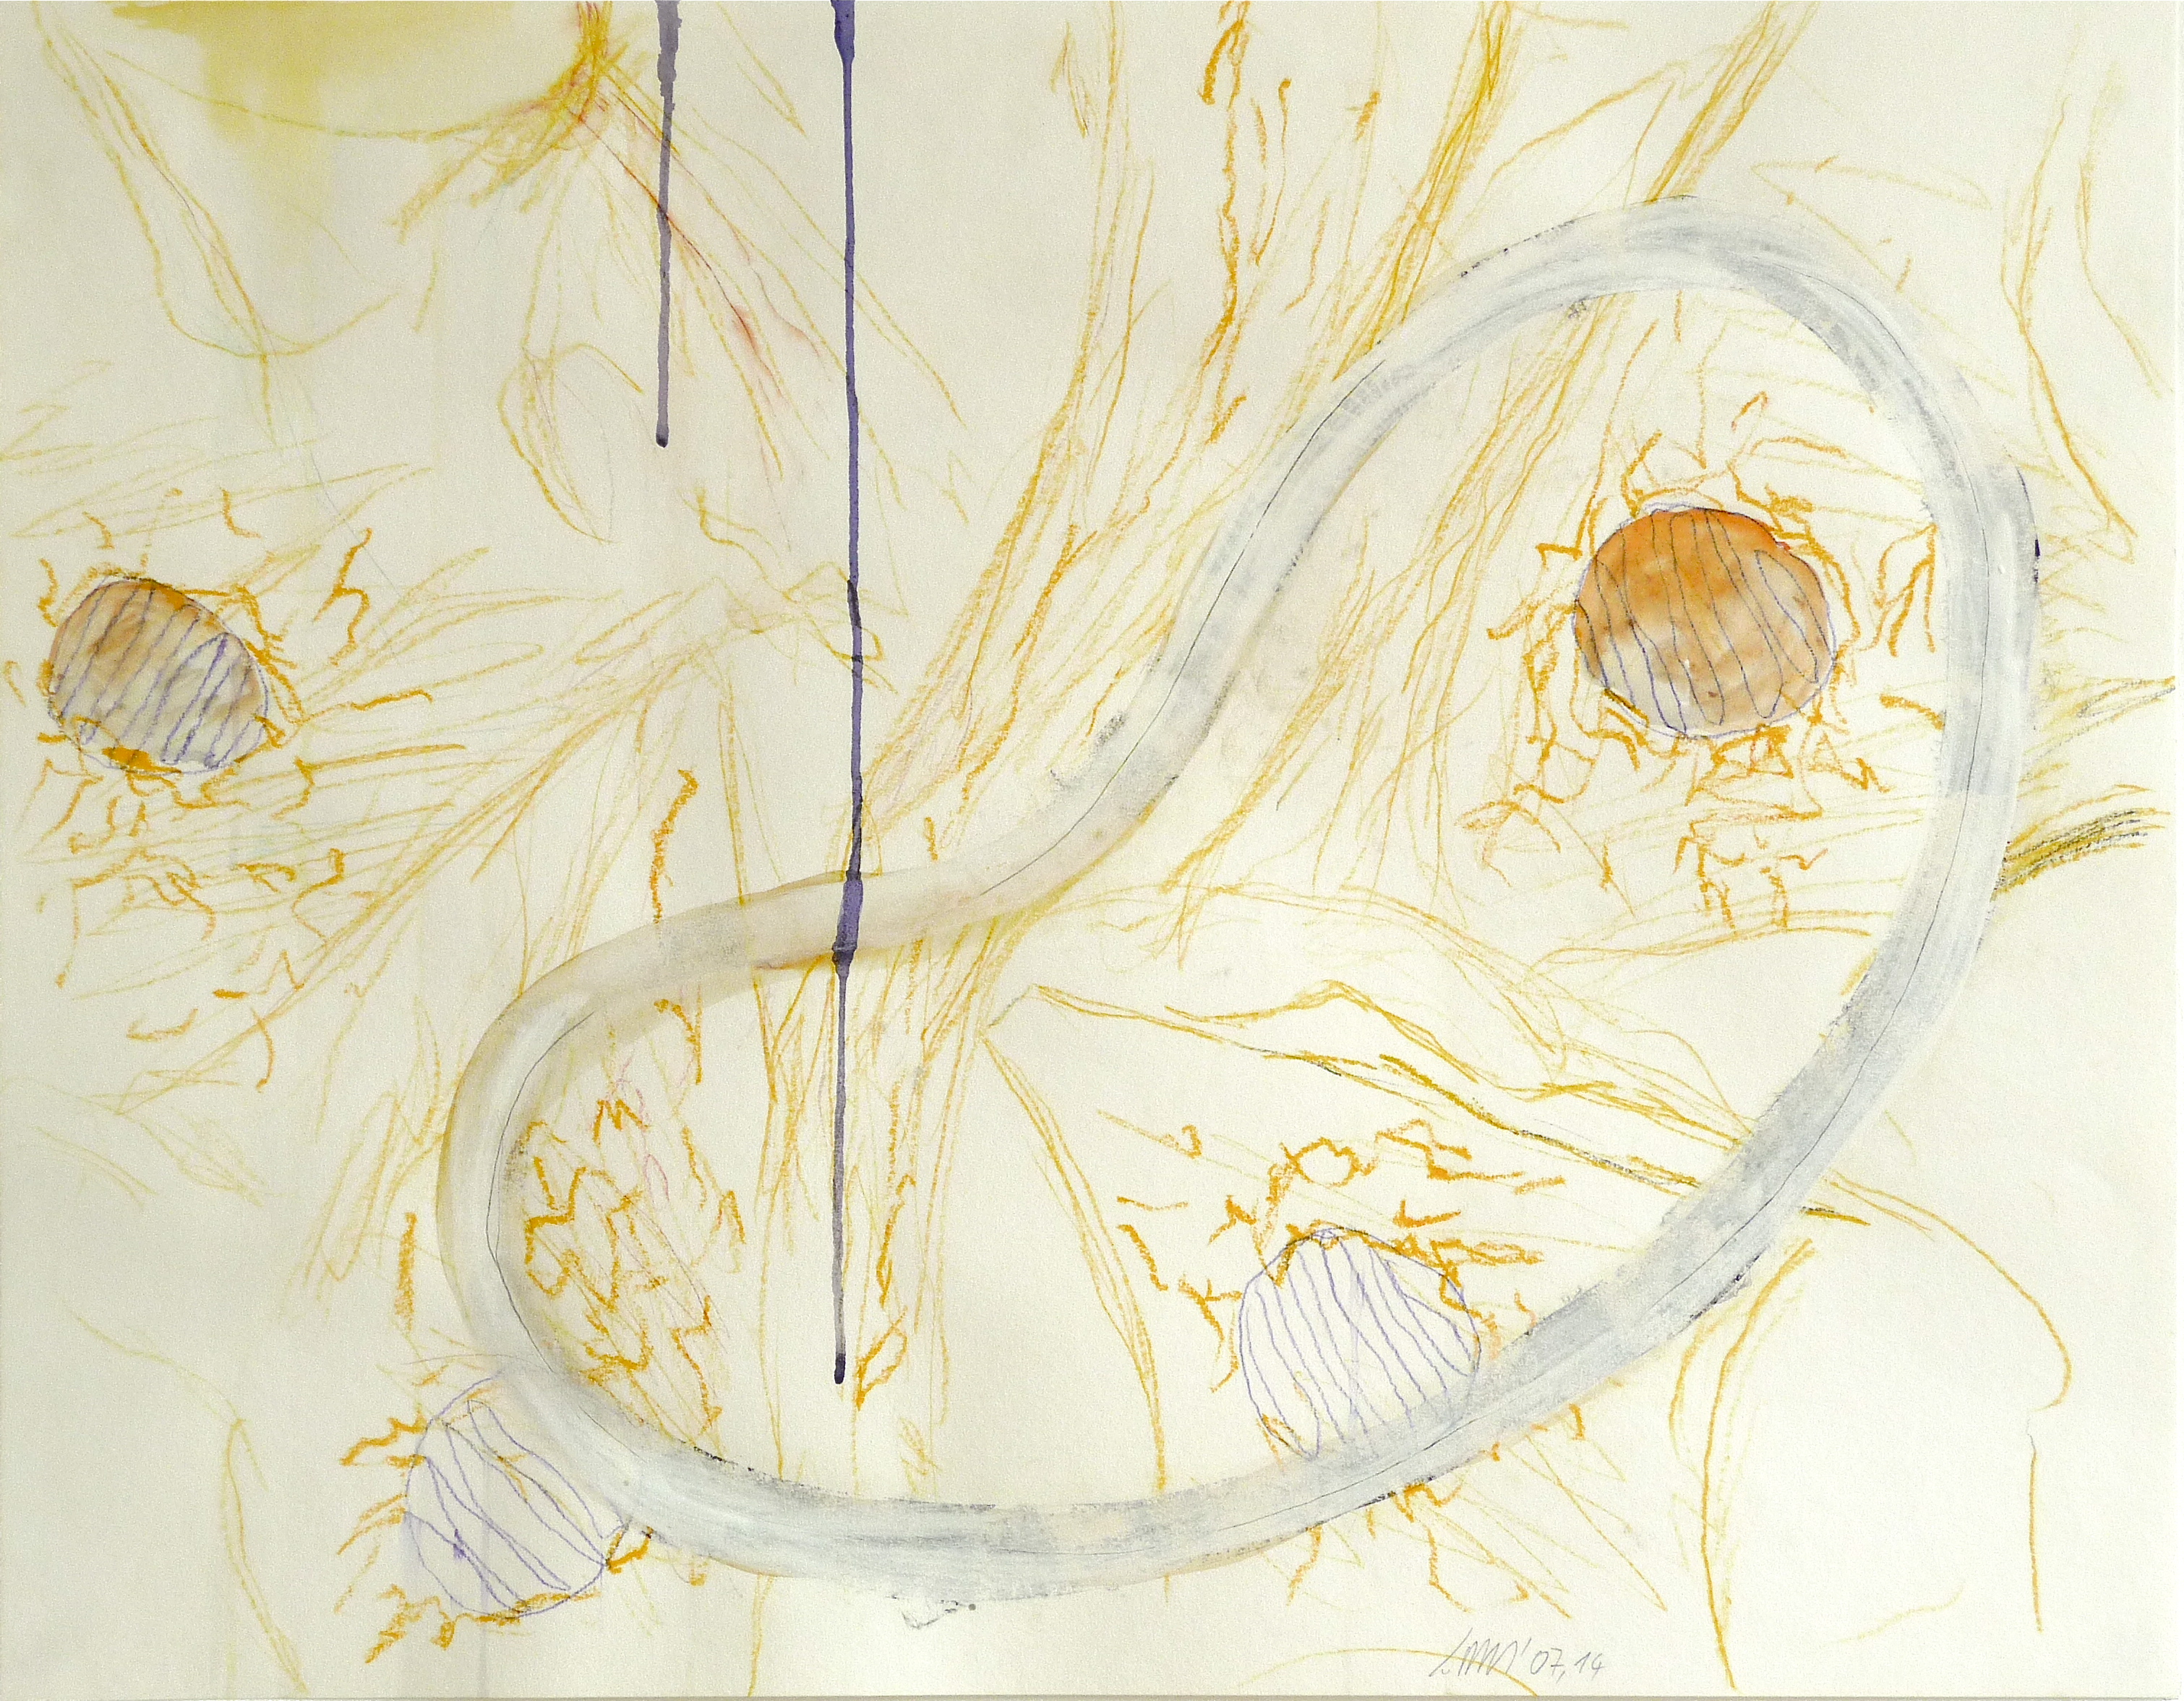 über Wege 14, Verschiedene Materialien auf Papier, 50 x 64 cm, 2007, Erwin Holl